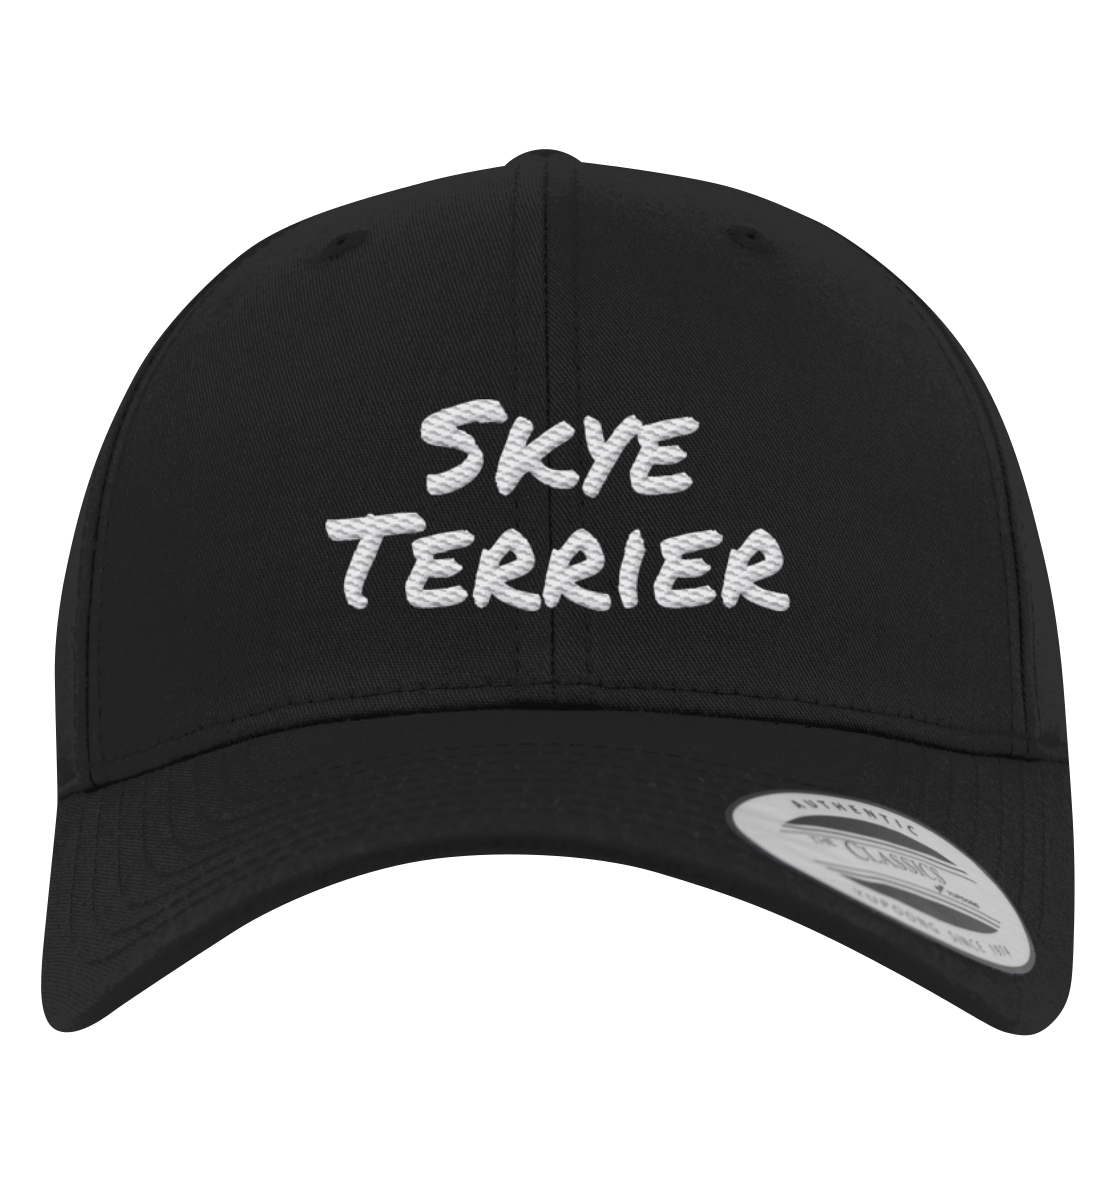 Skye Terrier - Premium Baseball Cap